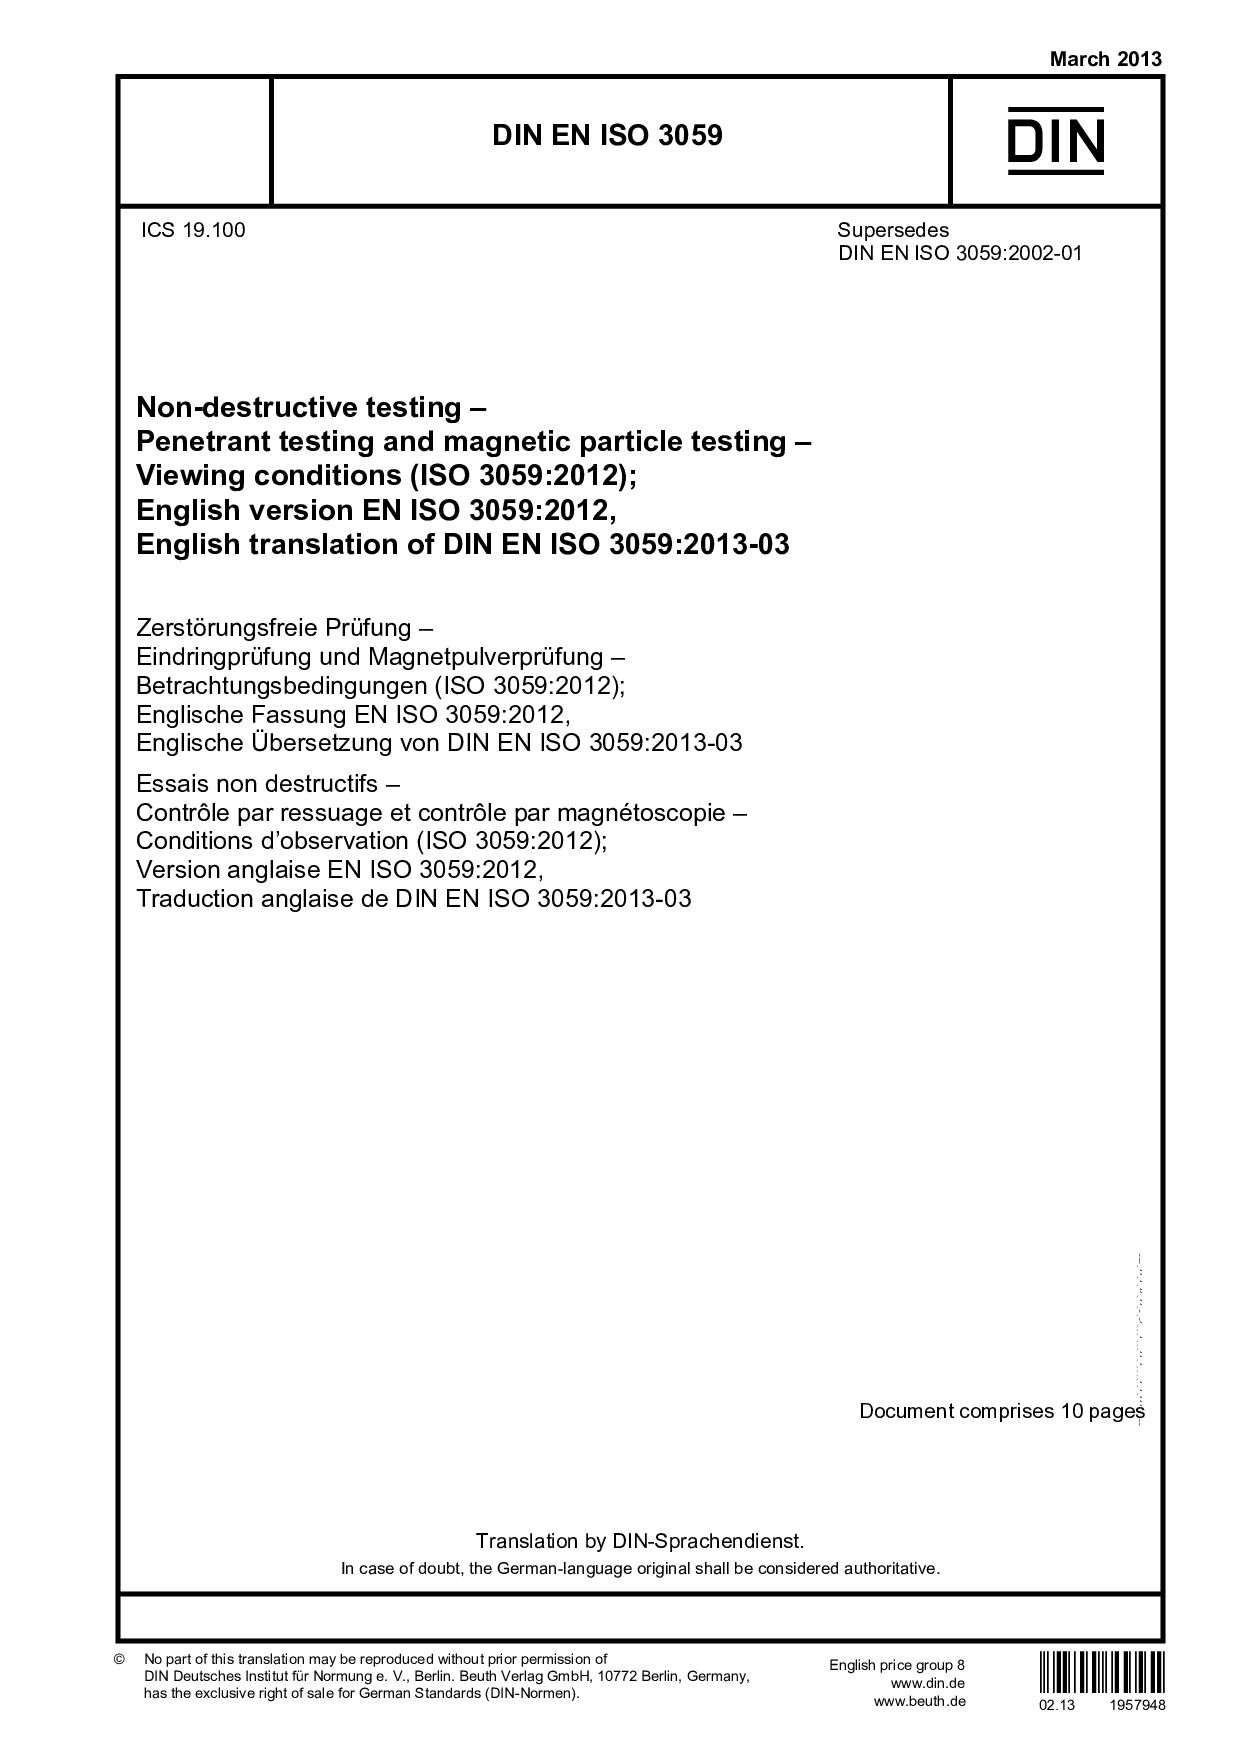 DIN EN ISO 3059:2013-03